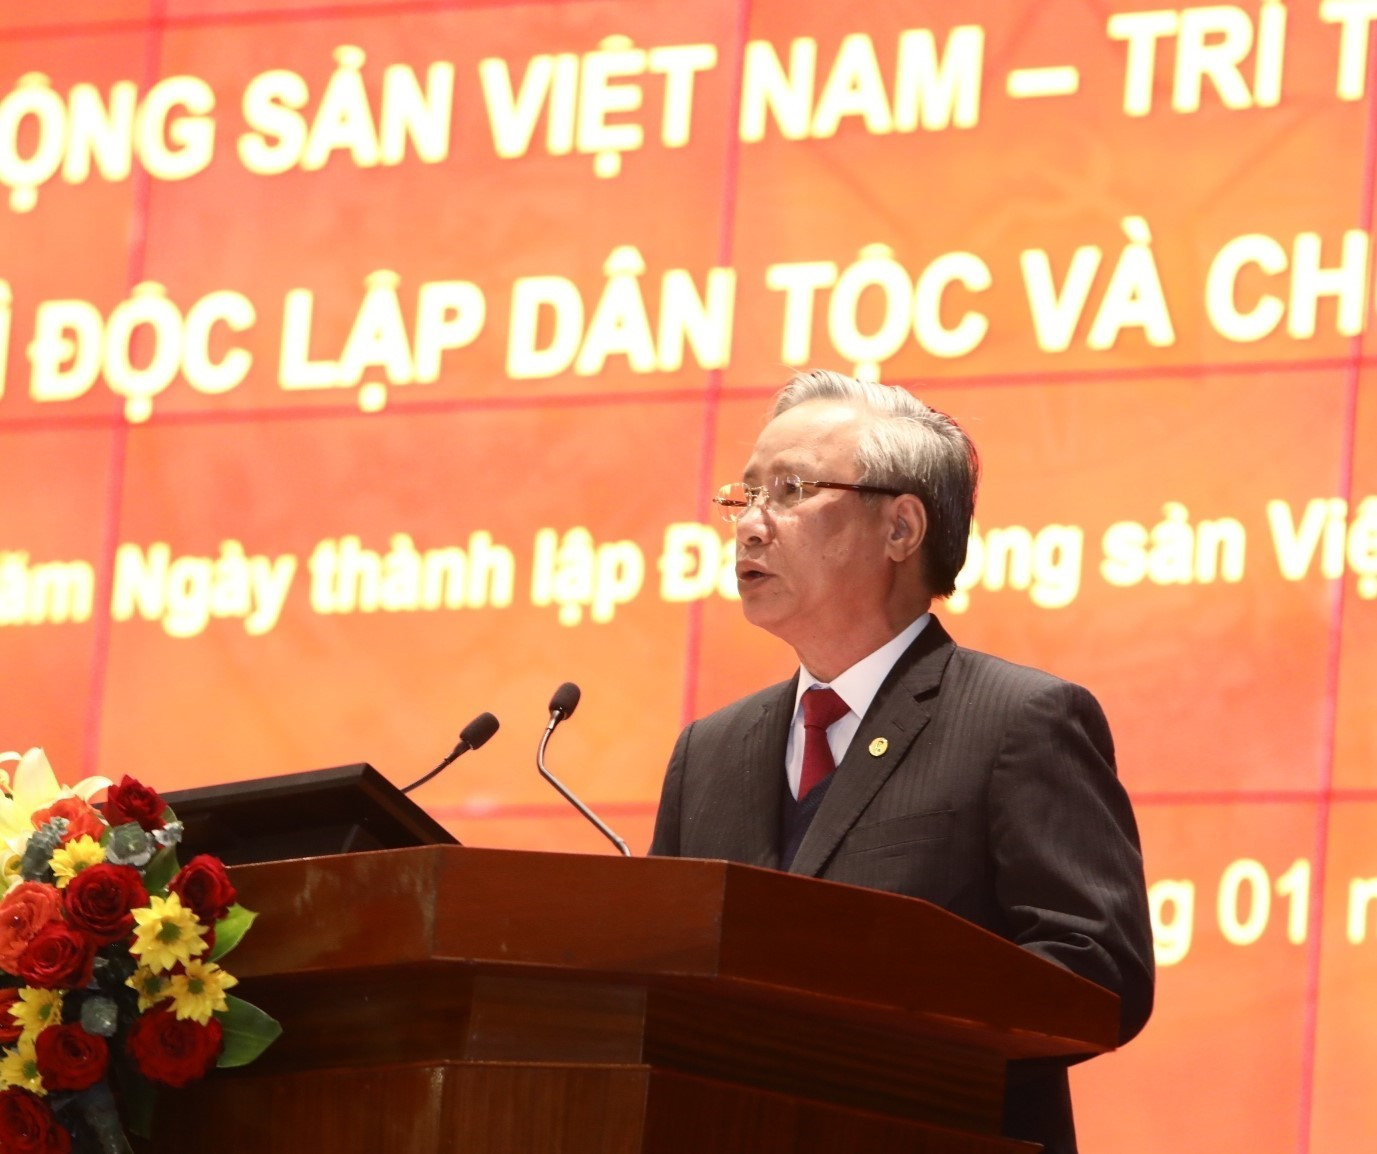 Đồng chí Trần Quốc Vượng - Ủy viên Bộ Chính trị, Thường trực Ban Bí thư phát biểu chỉ đạo tại hội nghị. Ảnh: TTXVN